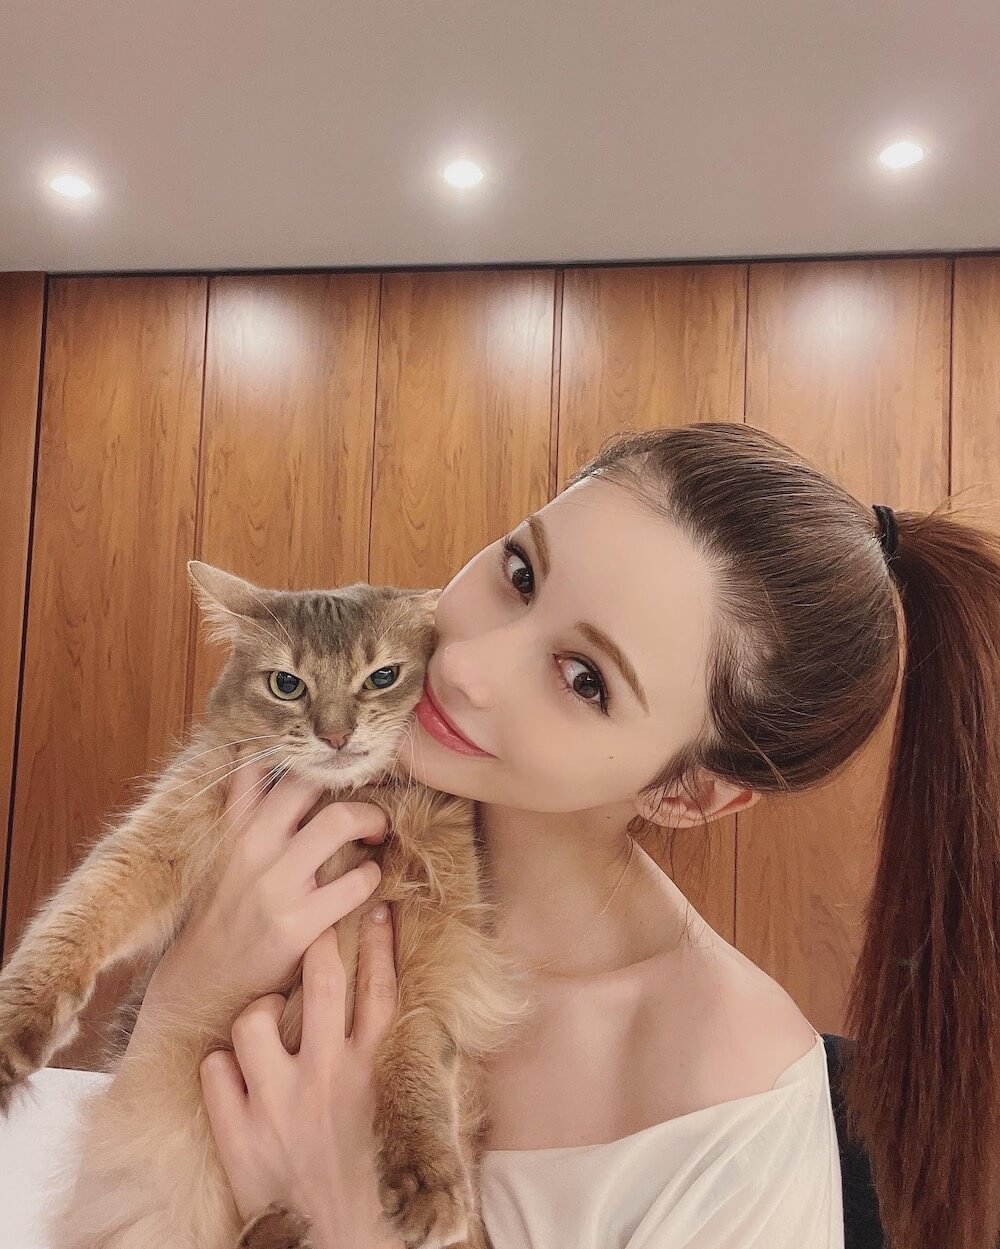 愛猫のジジ吉を抱っこするタレントのダレノガレ明美